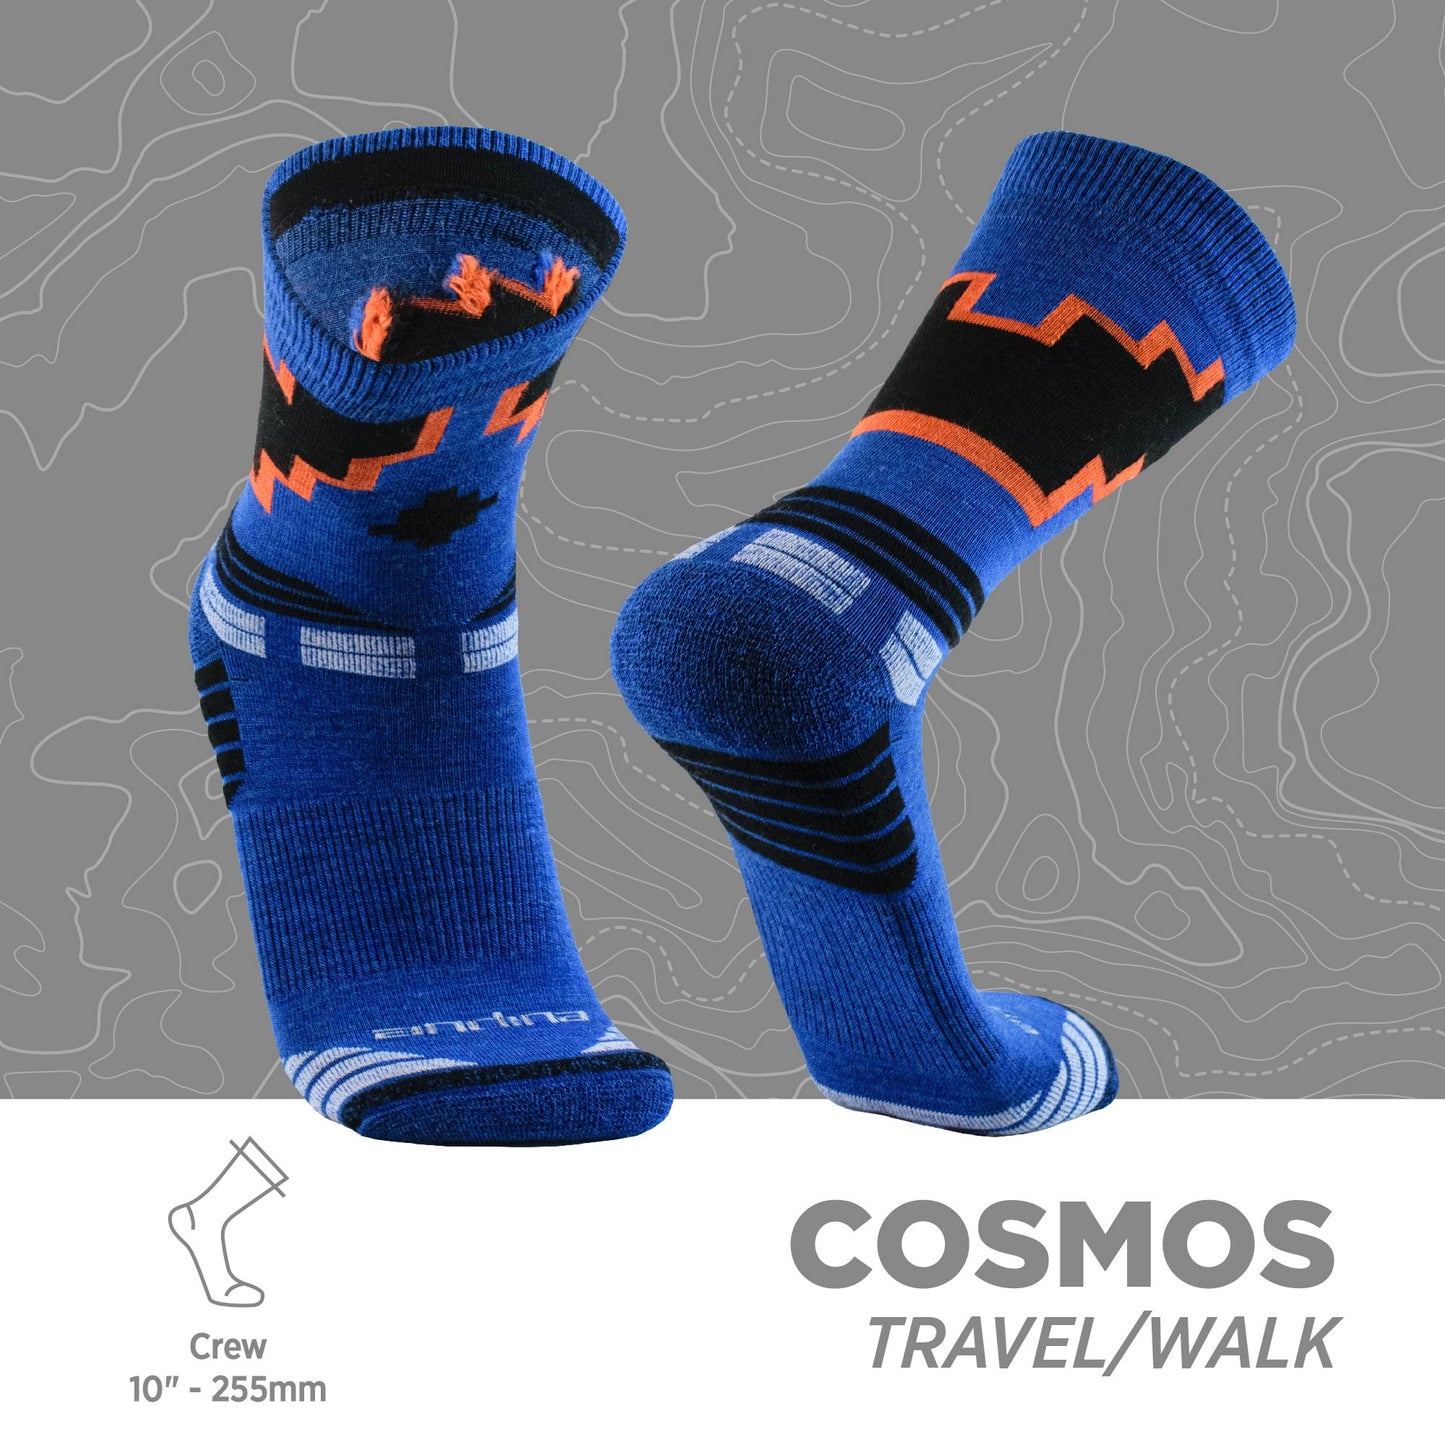 cosmos | Viajar y caminar 